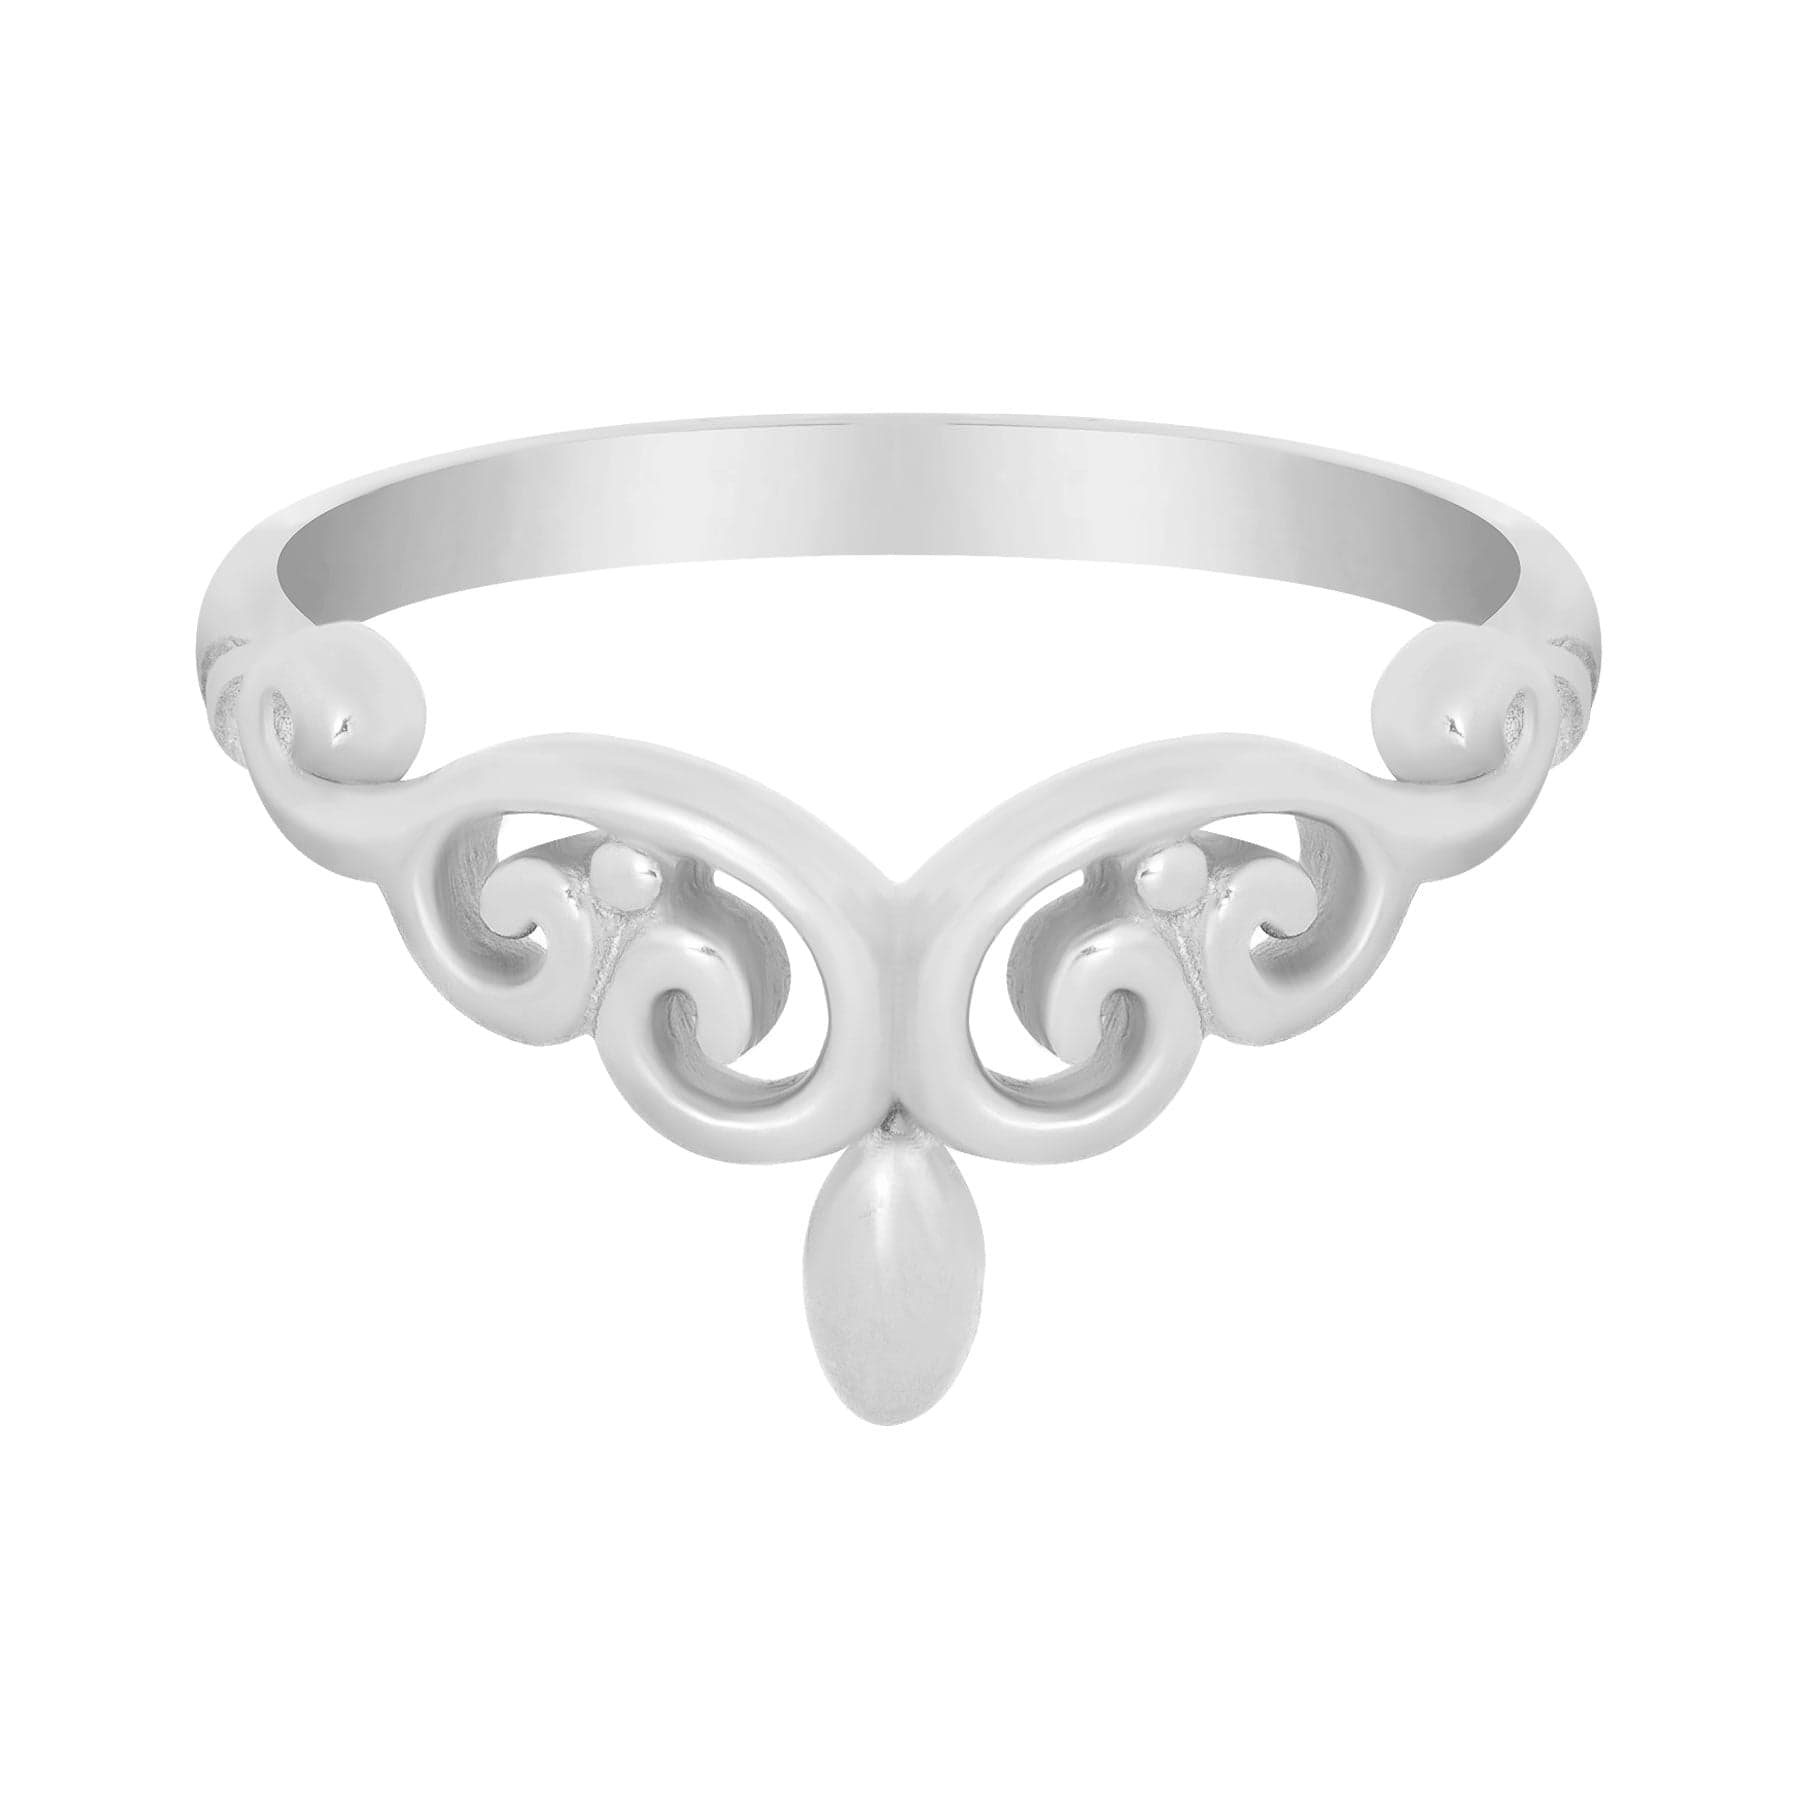 BohoMoon Stainless Steel Ballerina Ring Silver / US 7 / UK N / EUR 54 (medium)